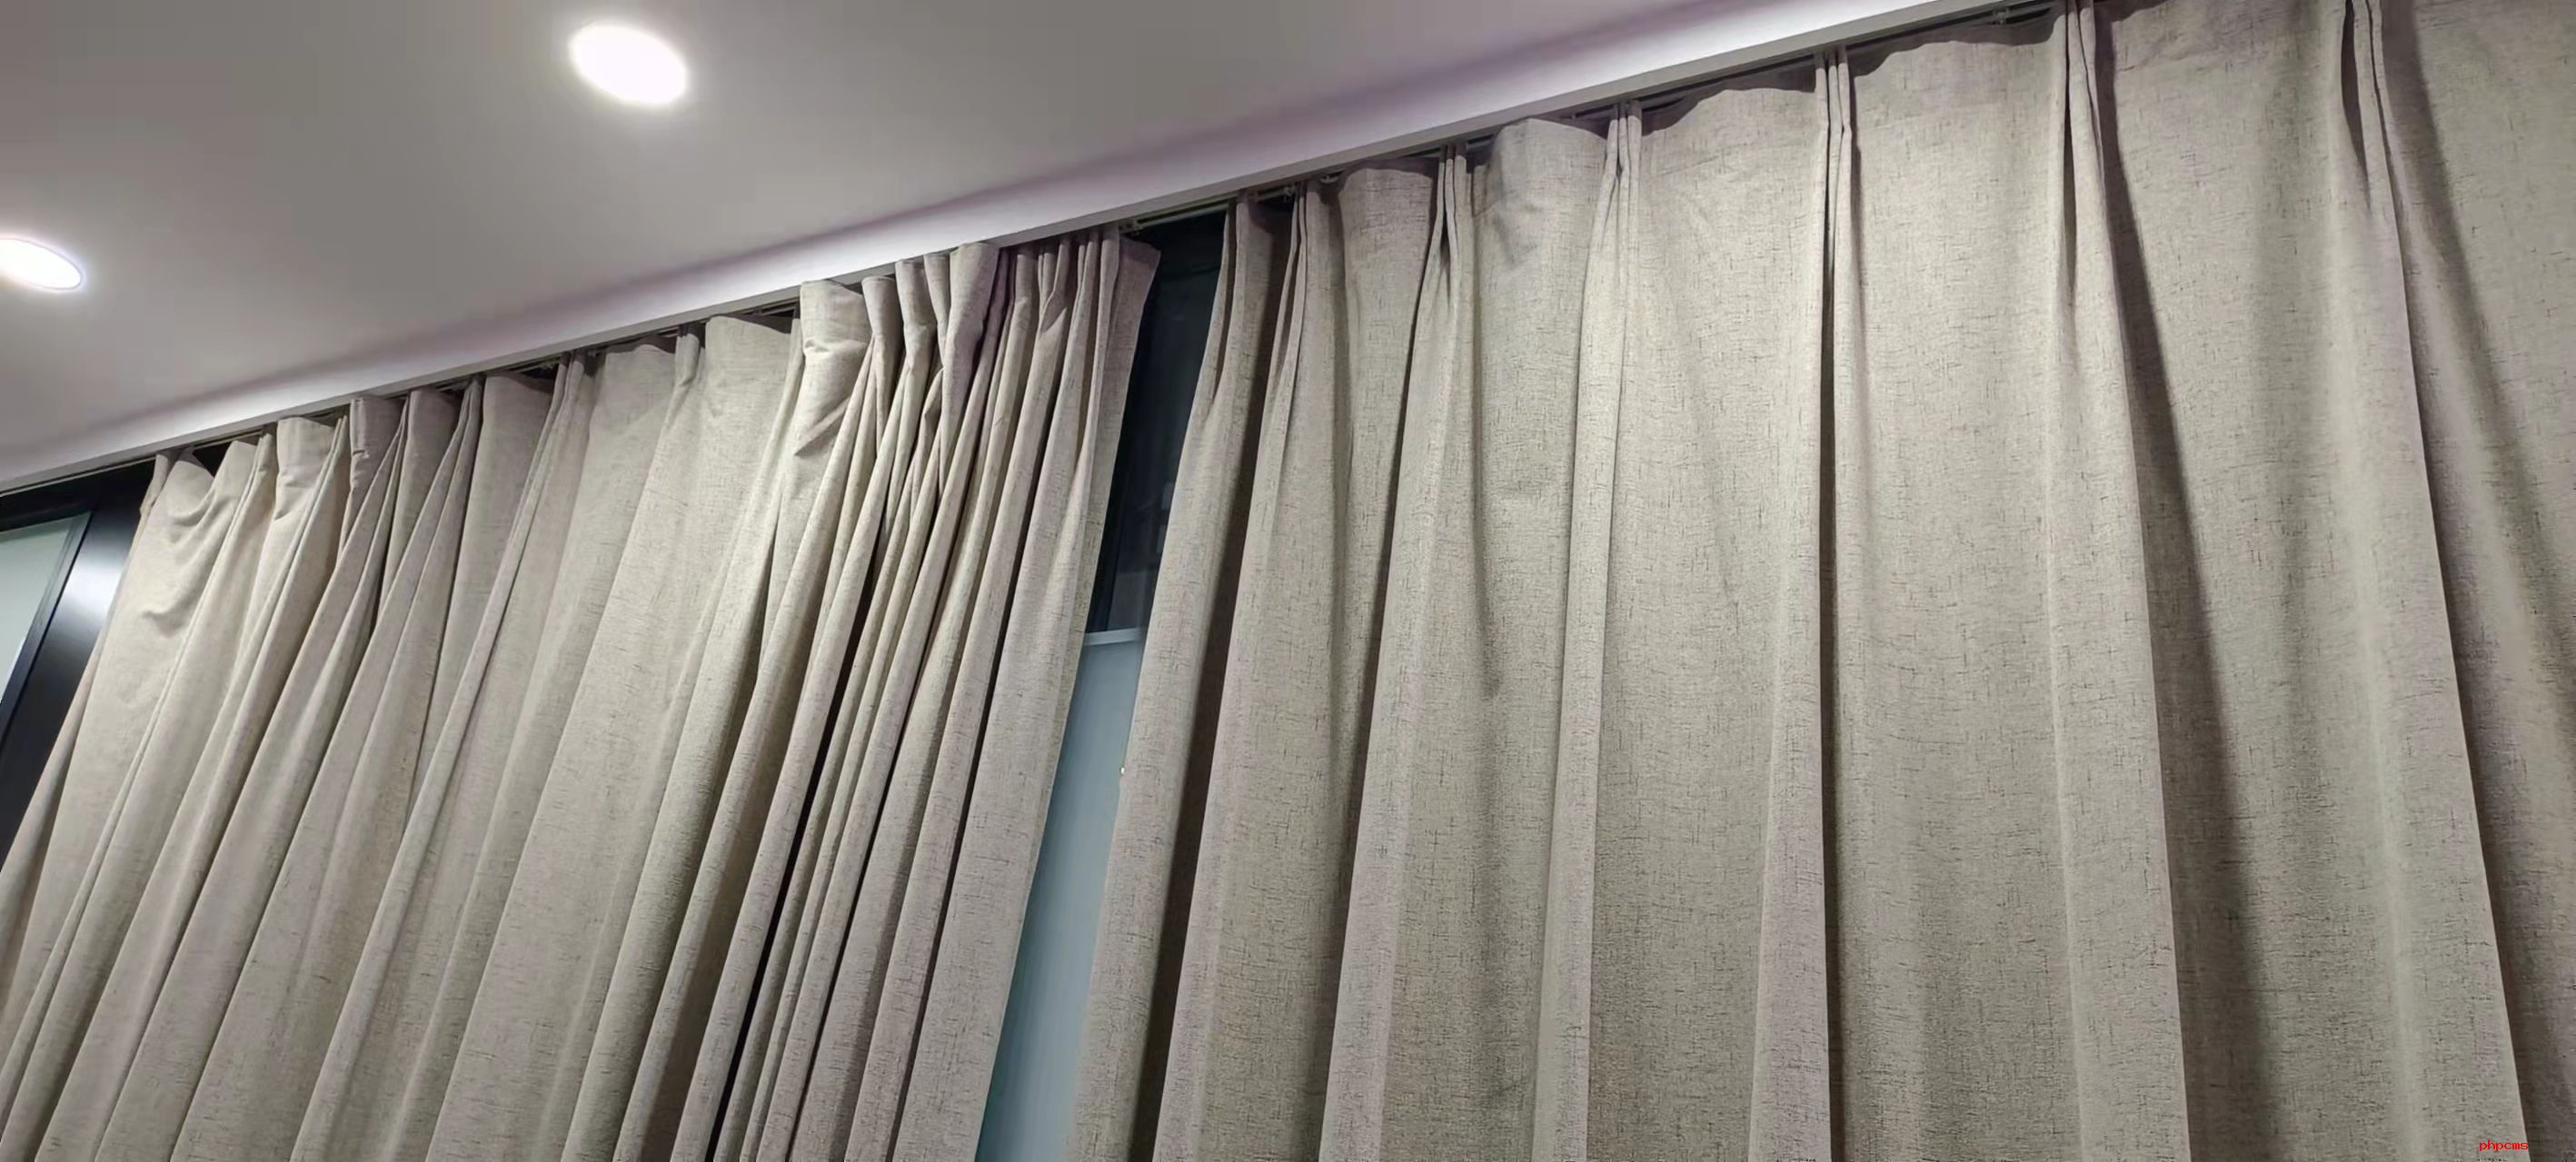 窗帘选择得当能给家的美观度增色不少 专家和你一起选窗帘